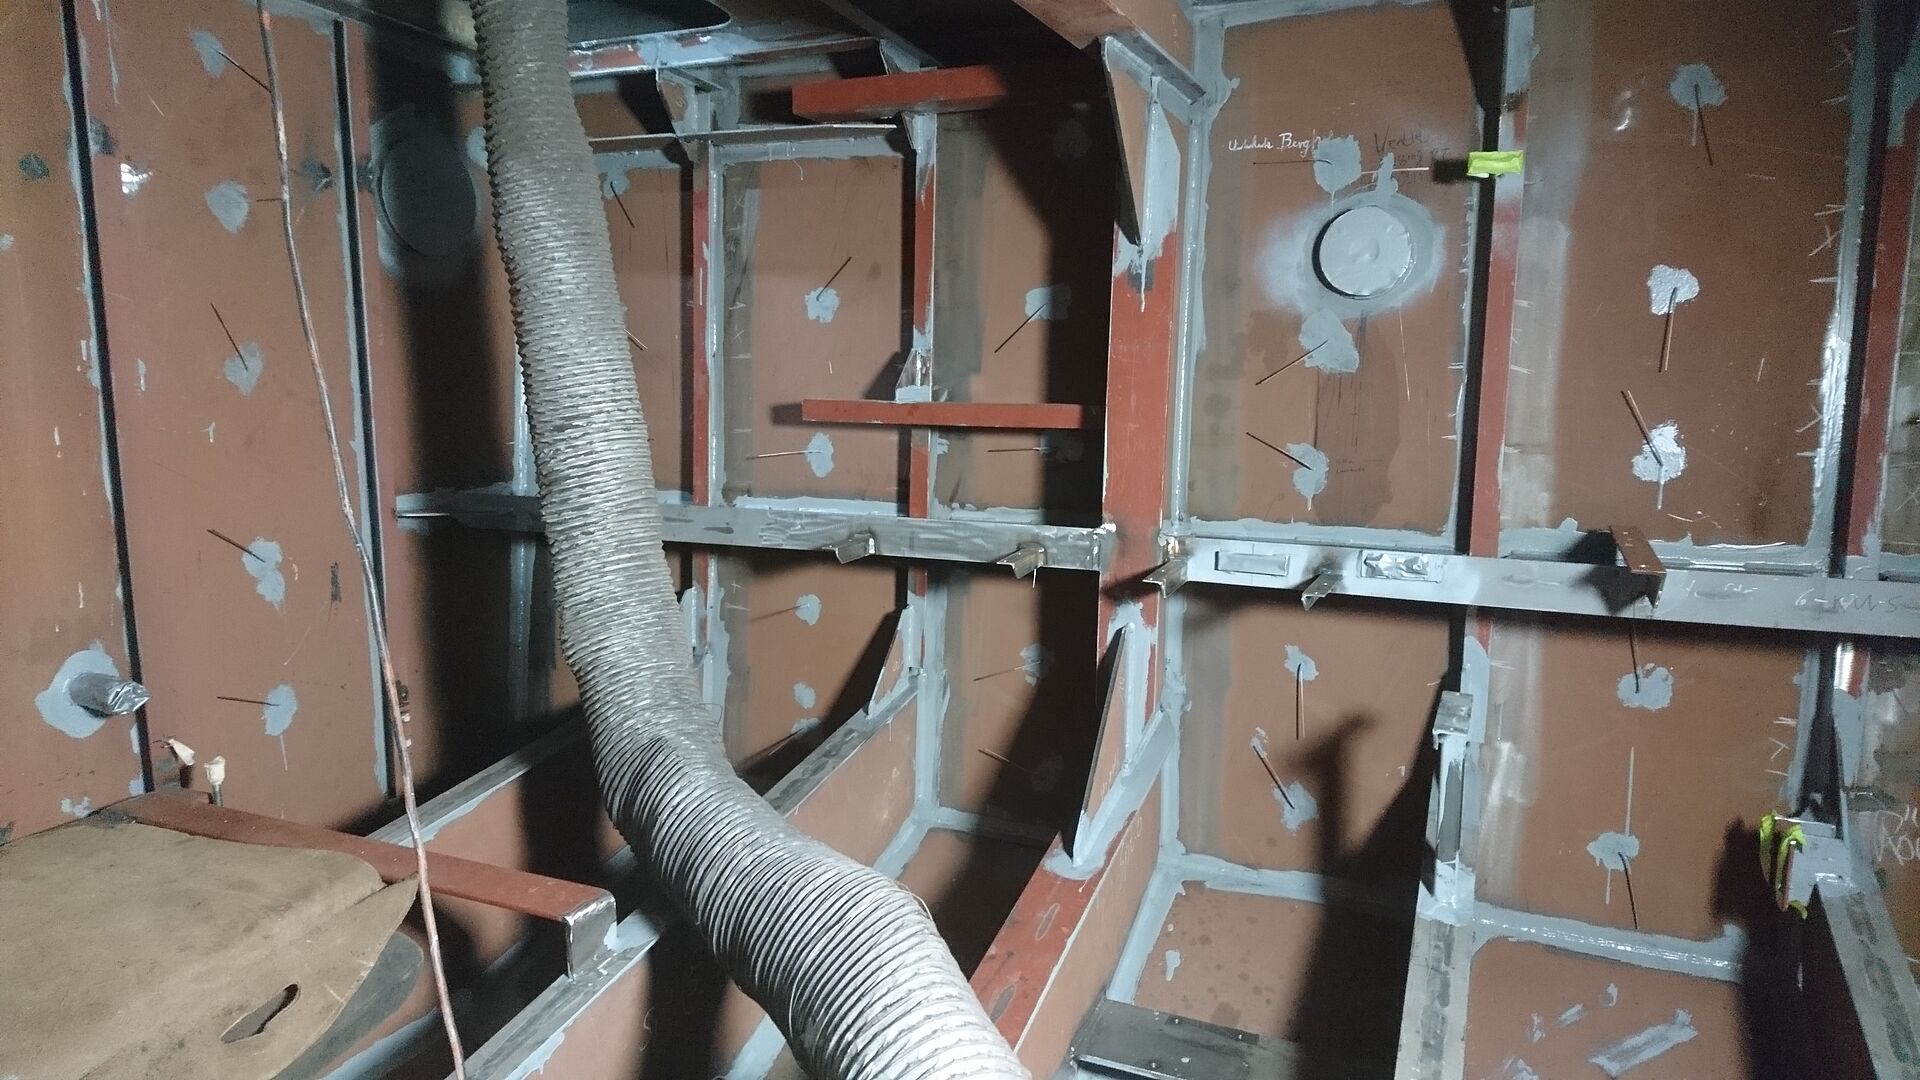 Blick in das Innere des Maschinenraums. Einige Leitungen und Rohre gehen durch den Raum.